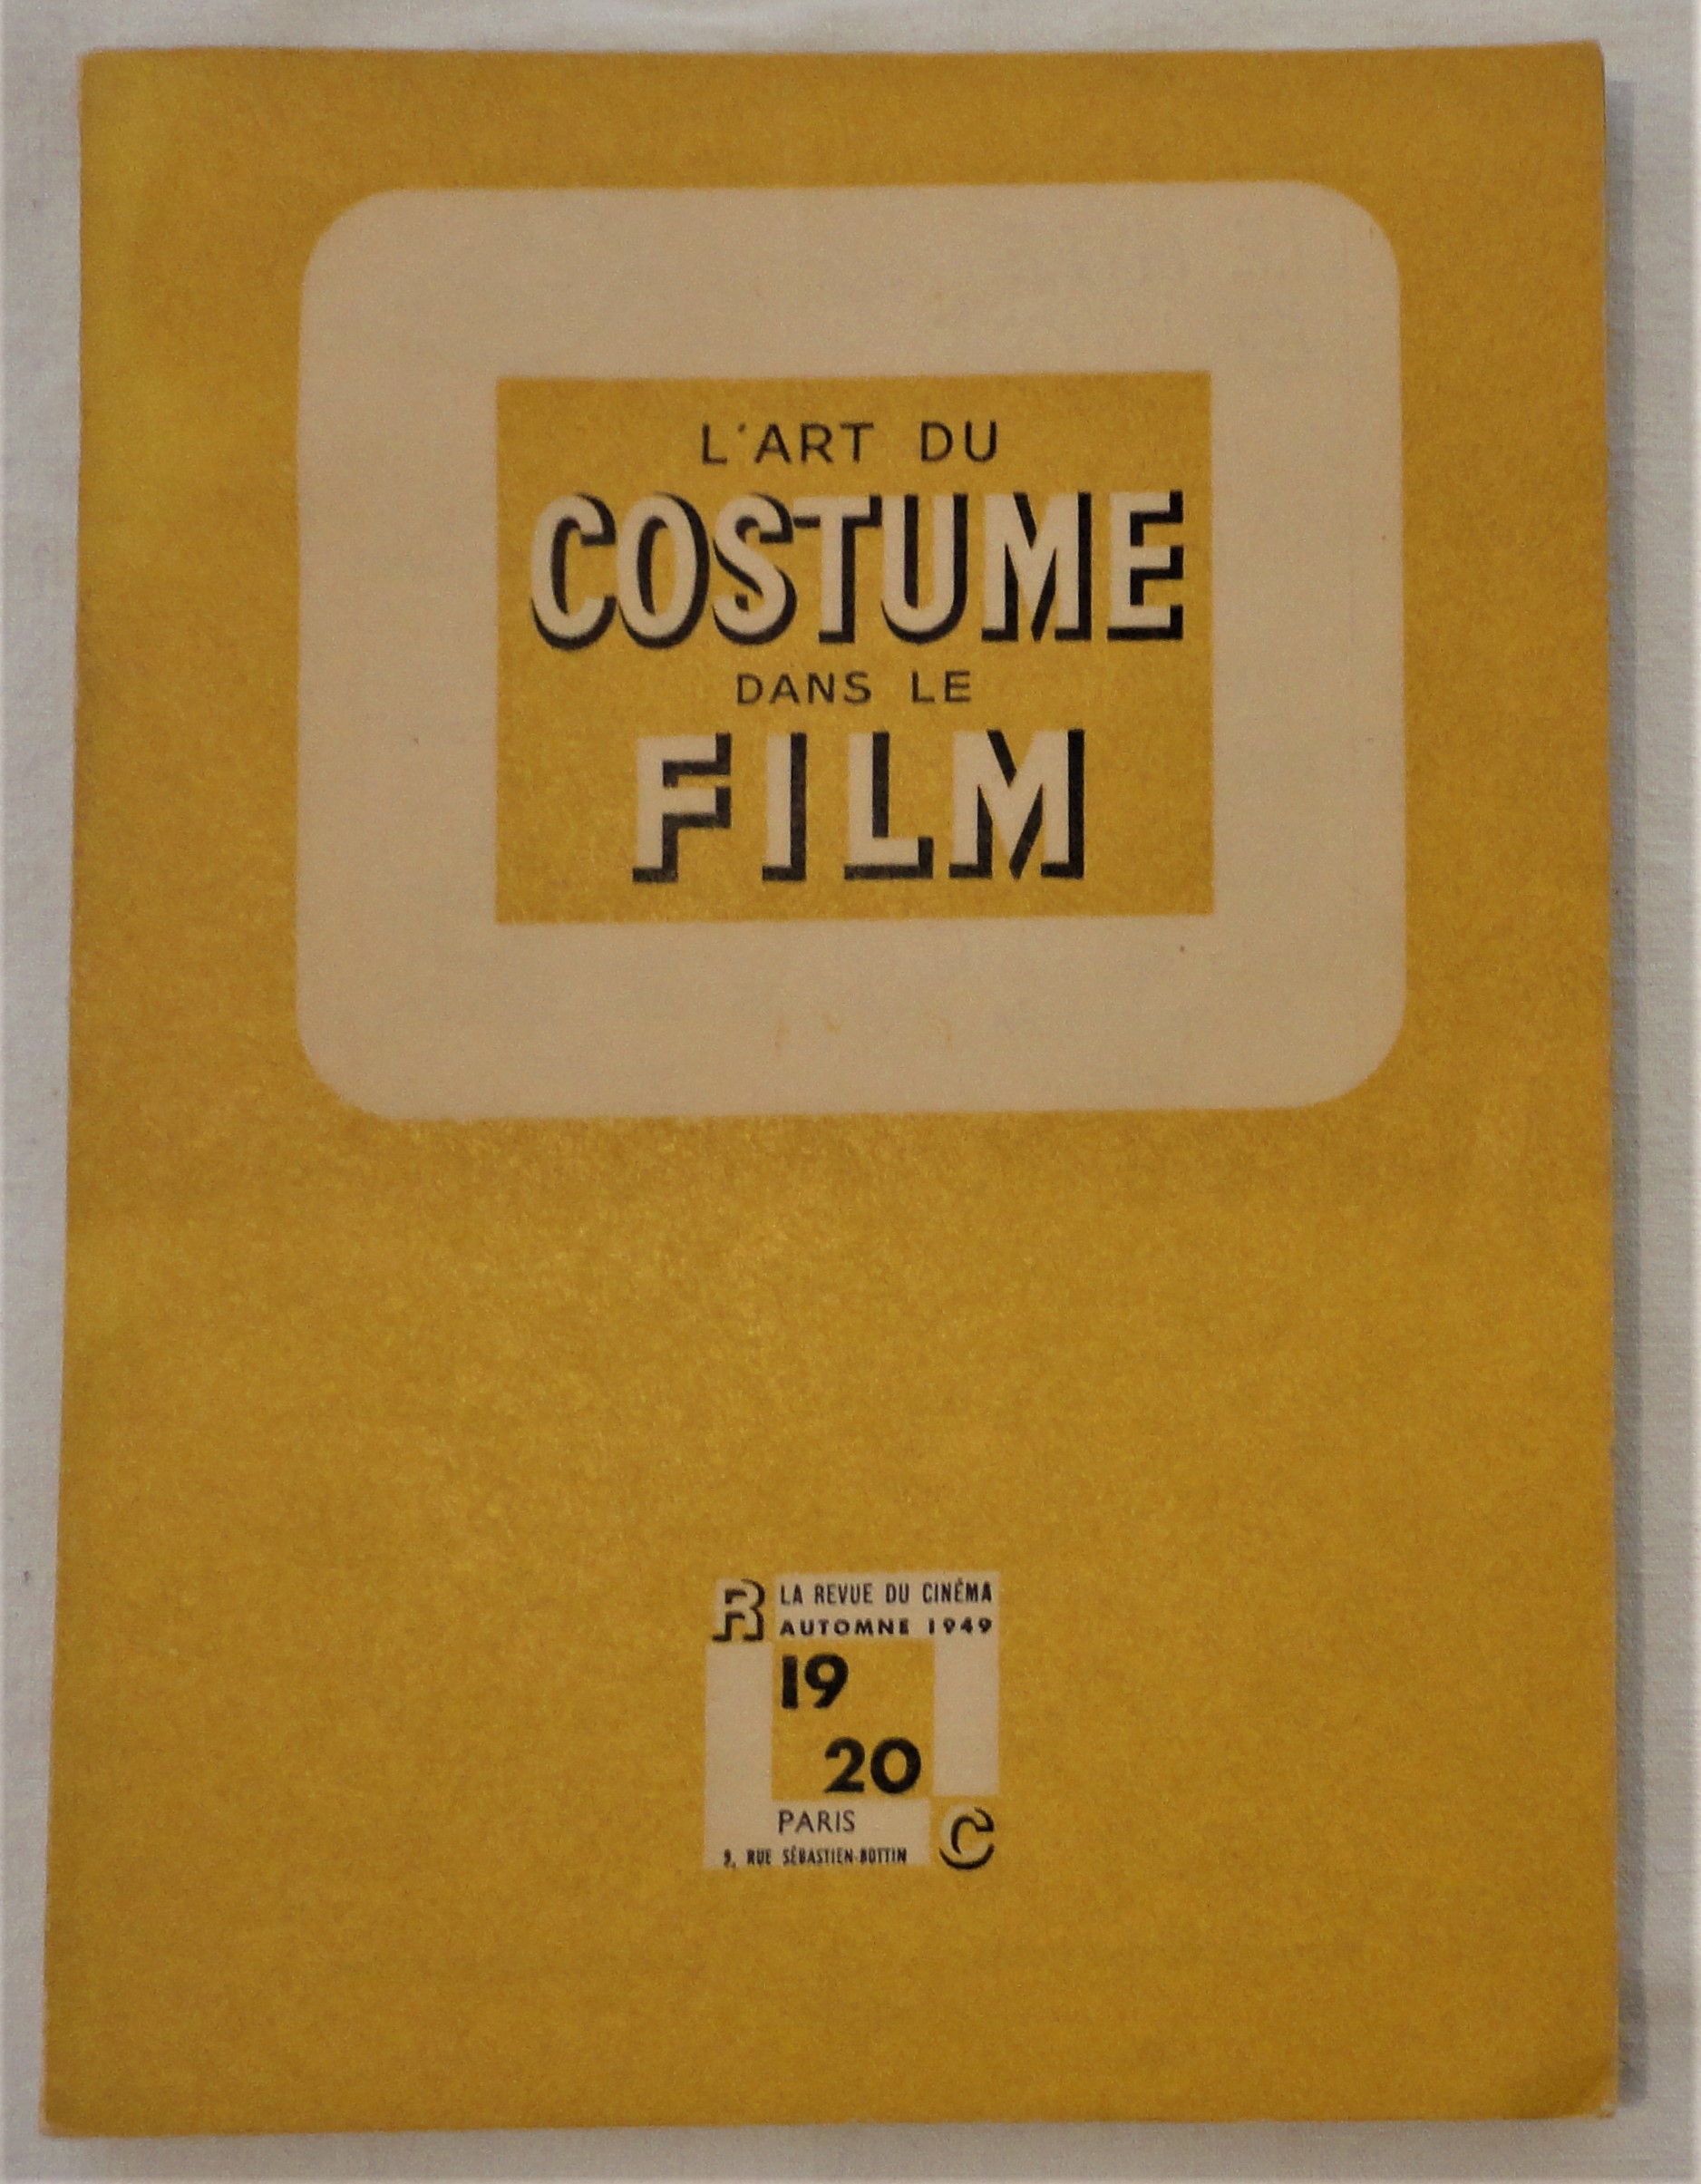  - La revue du cinma n 19-20, automne 1949. Cahier spcial consacr  L'art du costume dans le film.